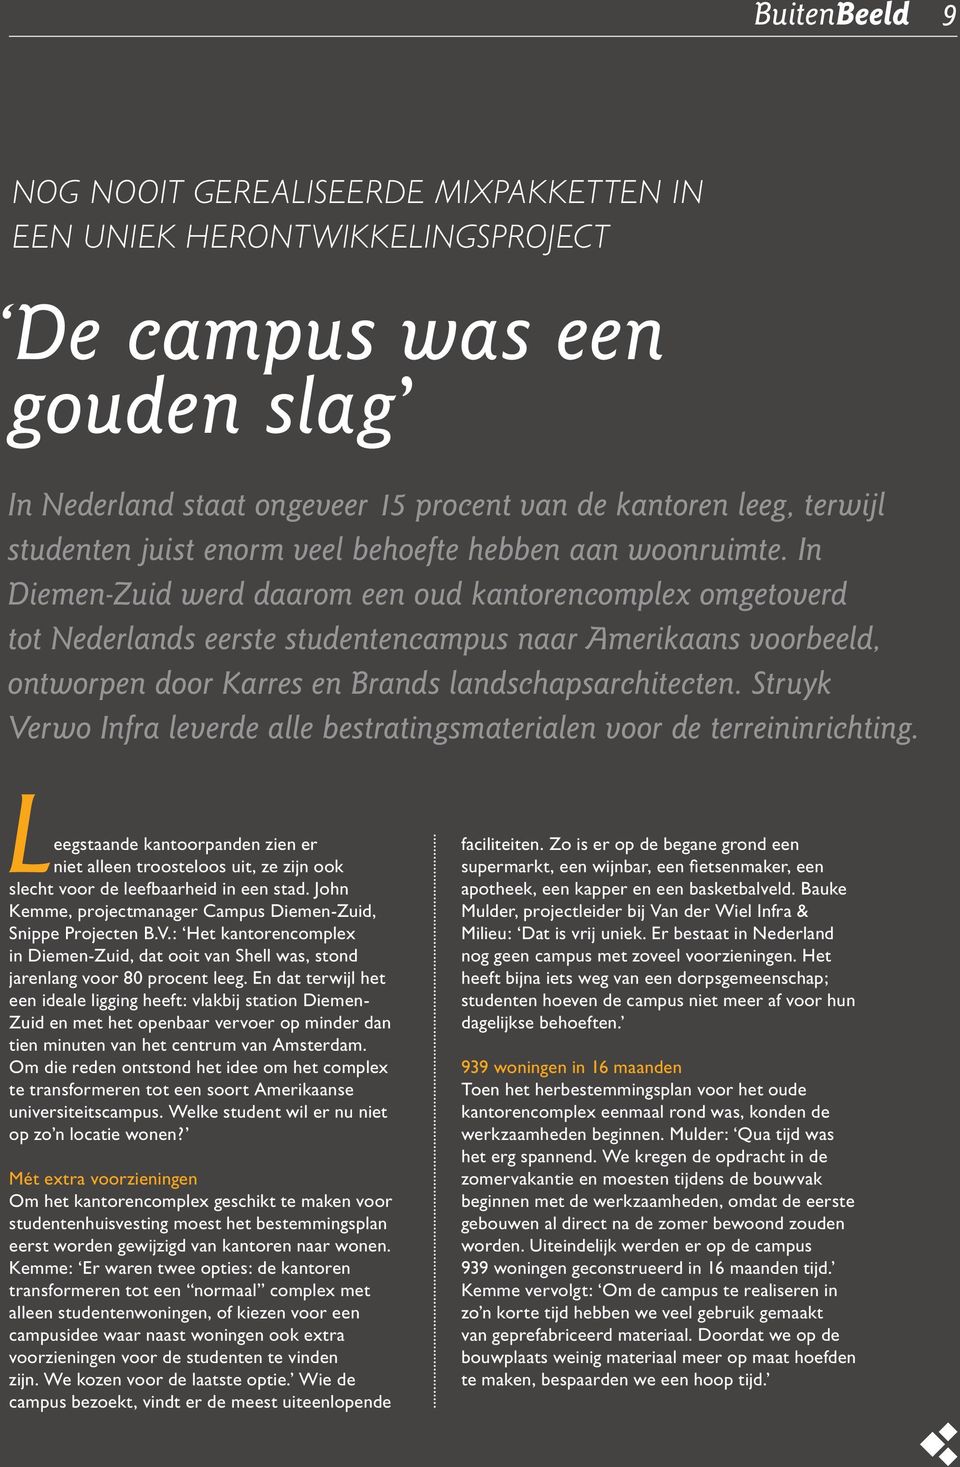 In Diemen-Zuid werd daarom een oud kantorencomplex omgetoverd tot Nederlands eerste studentencampus naar Amerikaans voorbeeld, ontworpen door Karres en Brands landschapsarchitecten.